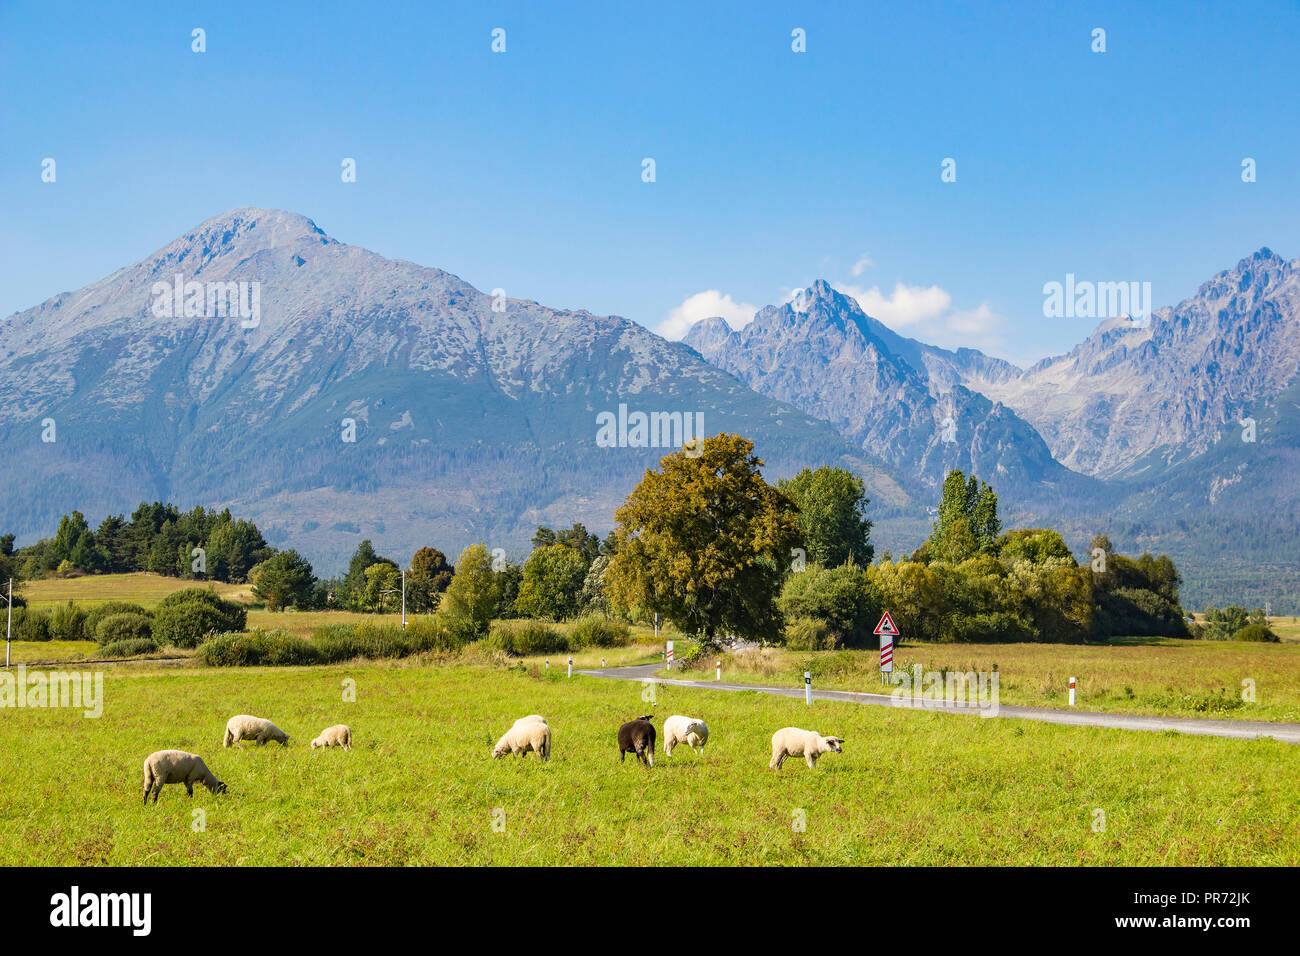 Wunderschöne Aussicht auf die Hohe Tatra (Vysoke Tatry) Berge und Herde Schafe grasen auf einer grünen Wiese, Slowakei Stockfoto